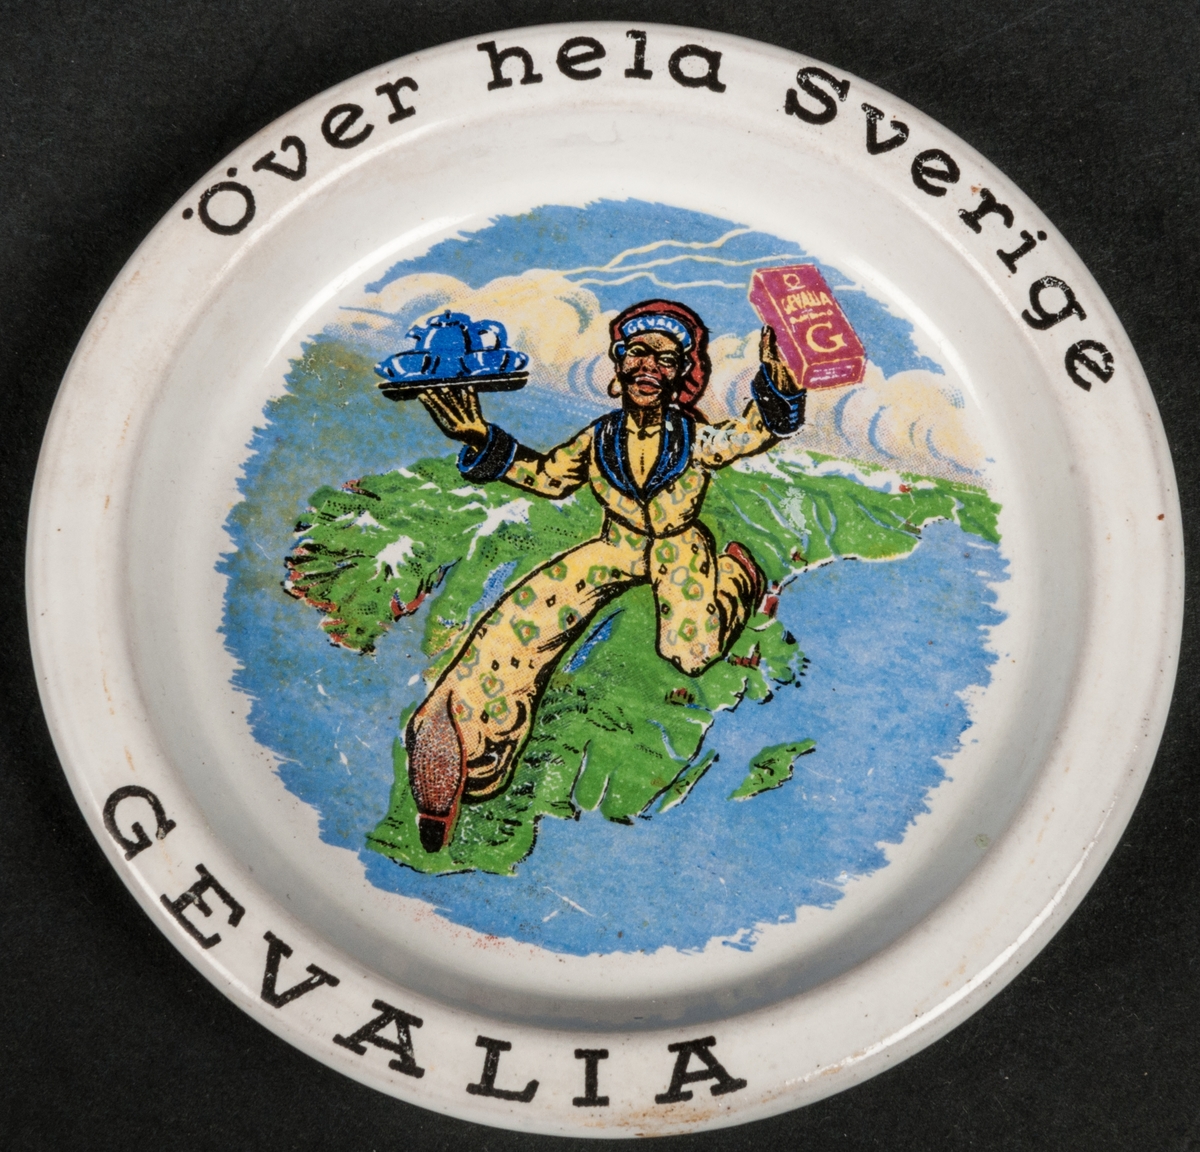 Askfat av flintgods försett med reklamtryck: "Över hela Sverige Gevalia". Bilden föreställer en mörk man som håller ett paket kaffe i handen. Förmodligen tillverkat vid Gefle Porslin i Gävle. Ostämplat.